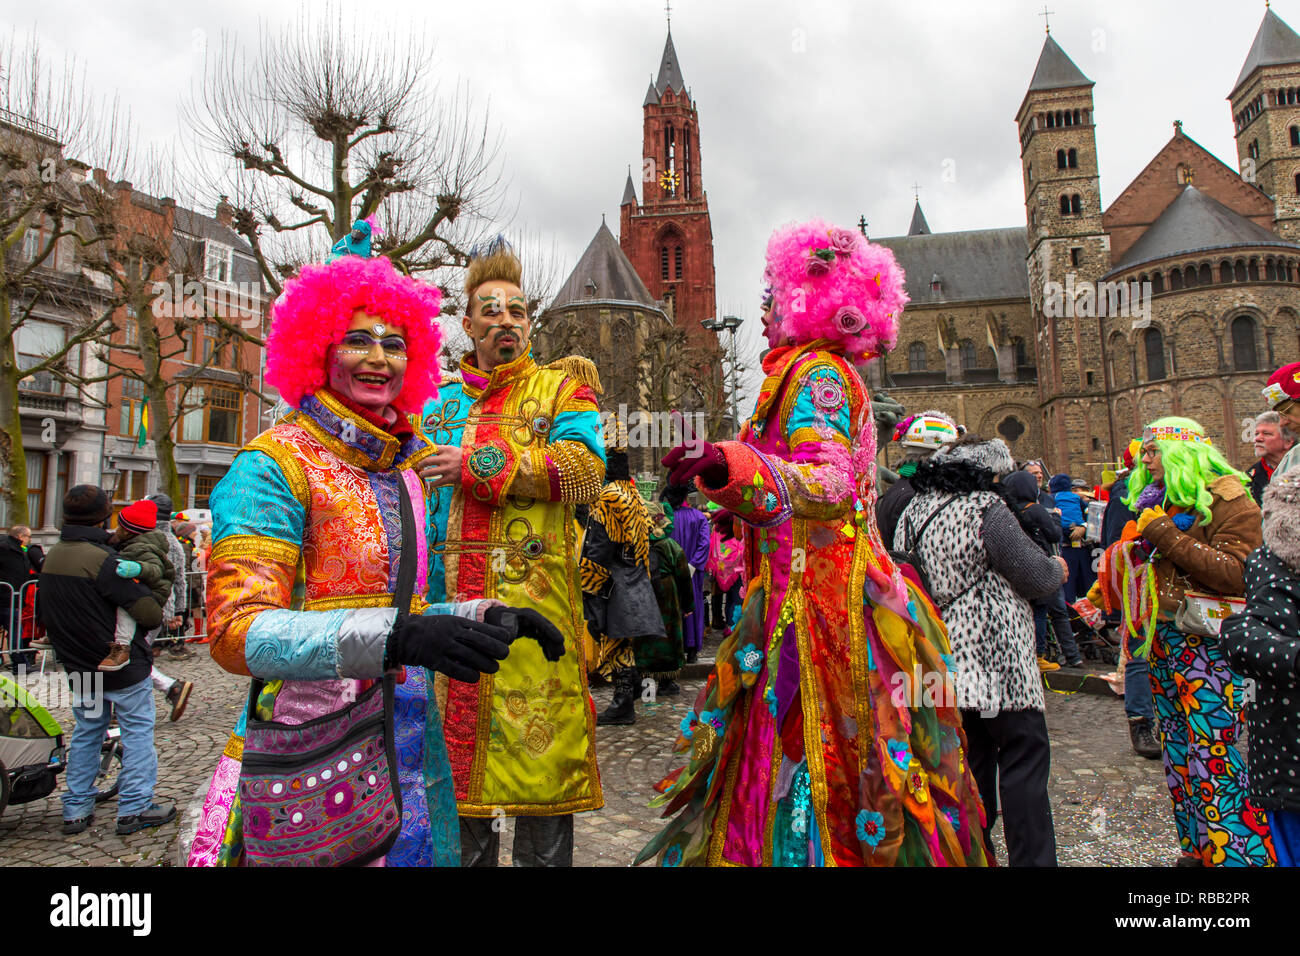 Karnevalsumzug in Maastricht, Niederlande, auf Karneval Sonntag, mit hunderten von Teilnehmern und Tausende von Zuschauern, Maastricht ist die stronghol Stockfoto